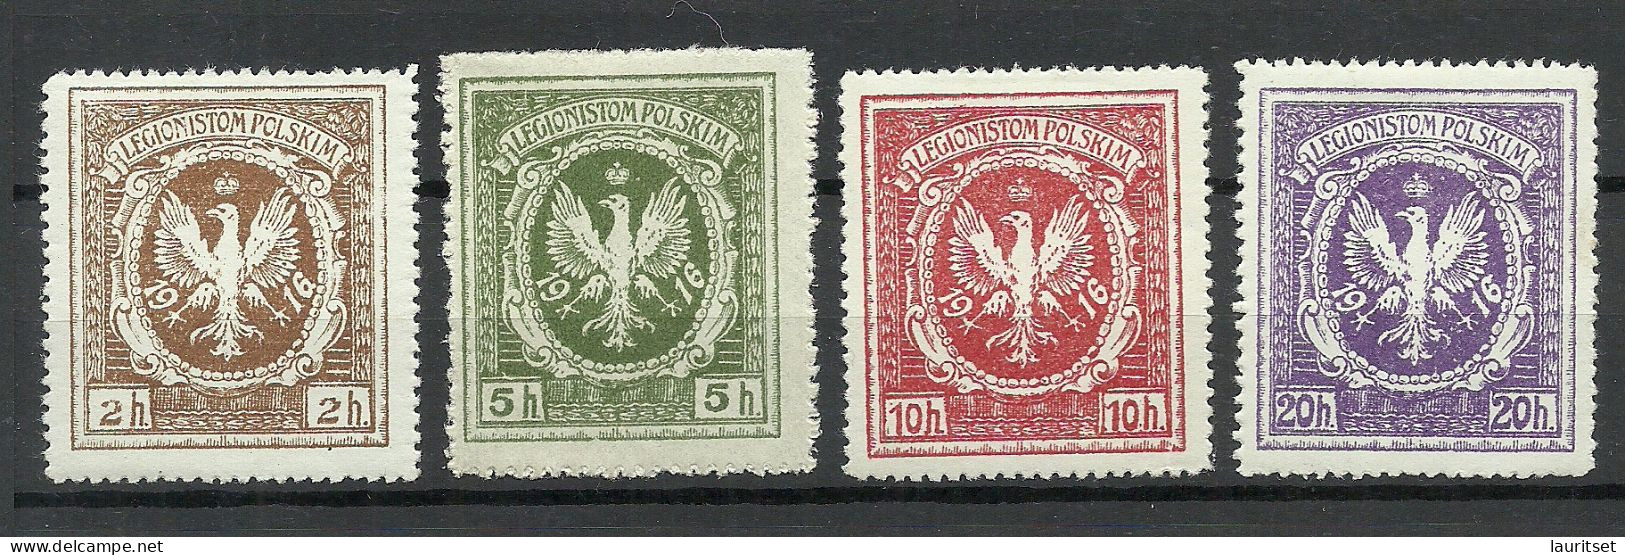 POLEN Poland 1916 Legionistam Polskim Für Polnische Legionäre Legion, 4 Stamps * - Nuovi